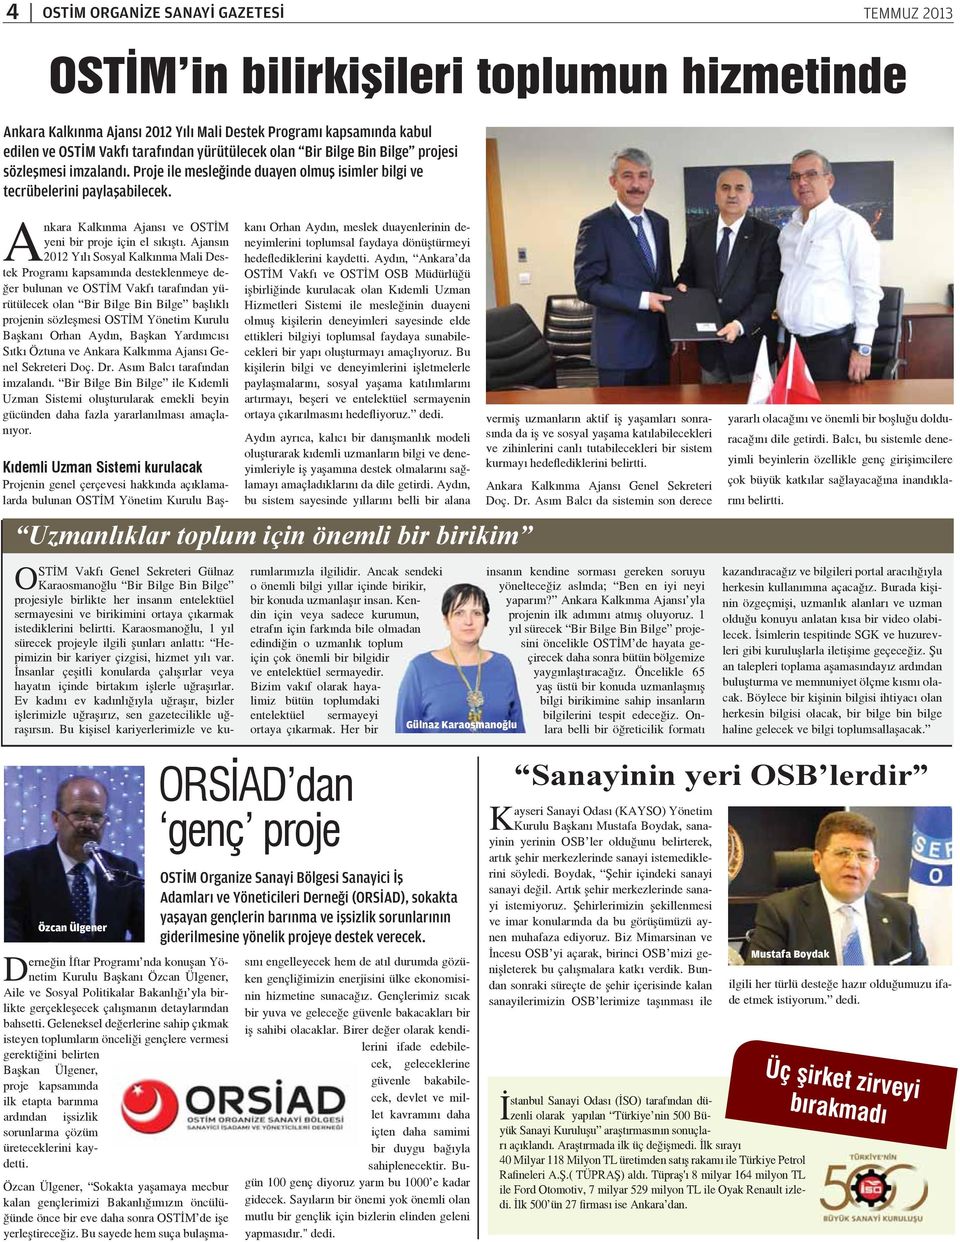 Ankara Kalkınma Ajansı ve OSTİM yeni bir proje için el sıkıştı.